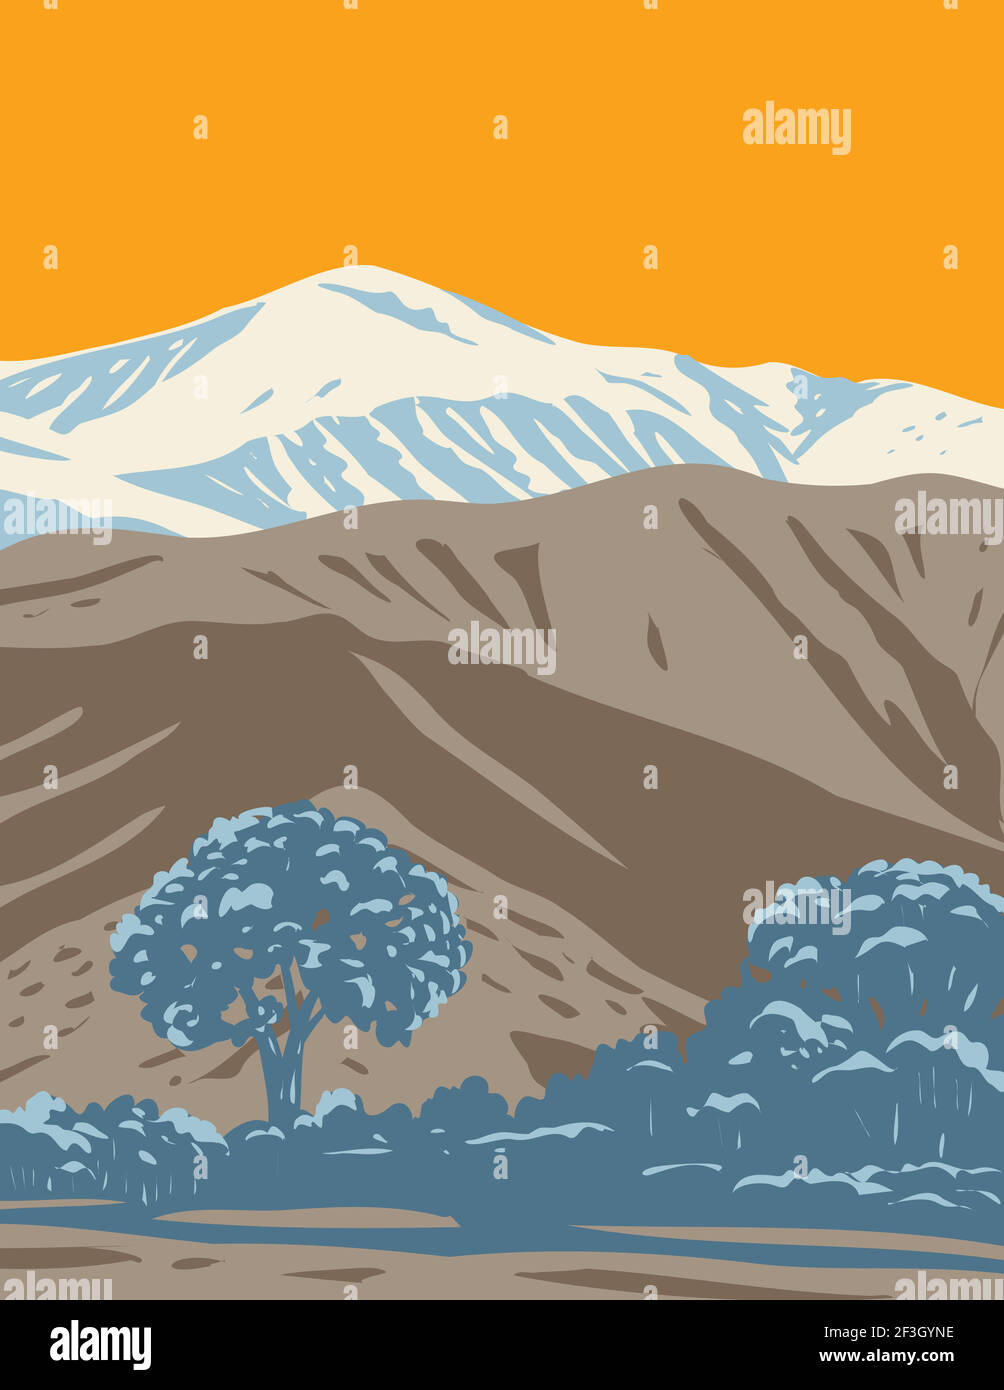 Affiche WPA du monument national sable-neige situé dans le sud de la Californie, couvrant les montagnes San Bernardino, le désert de Mojave et le désert du Colorado i Illustration de Vecteur